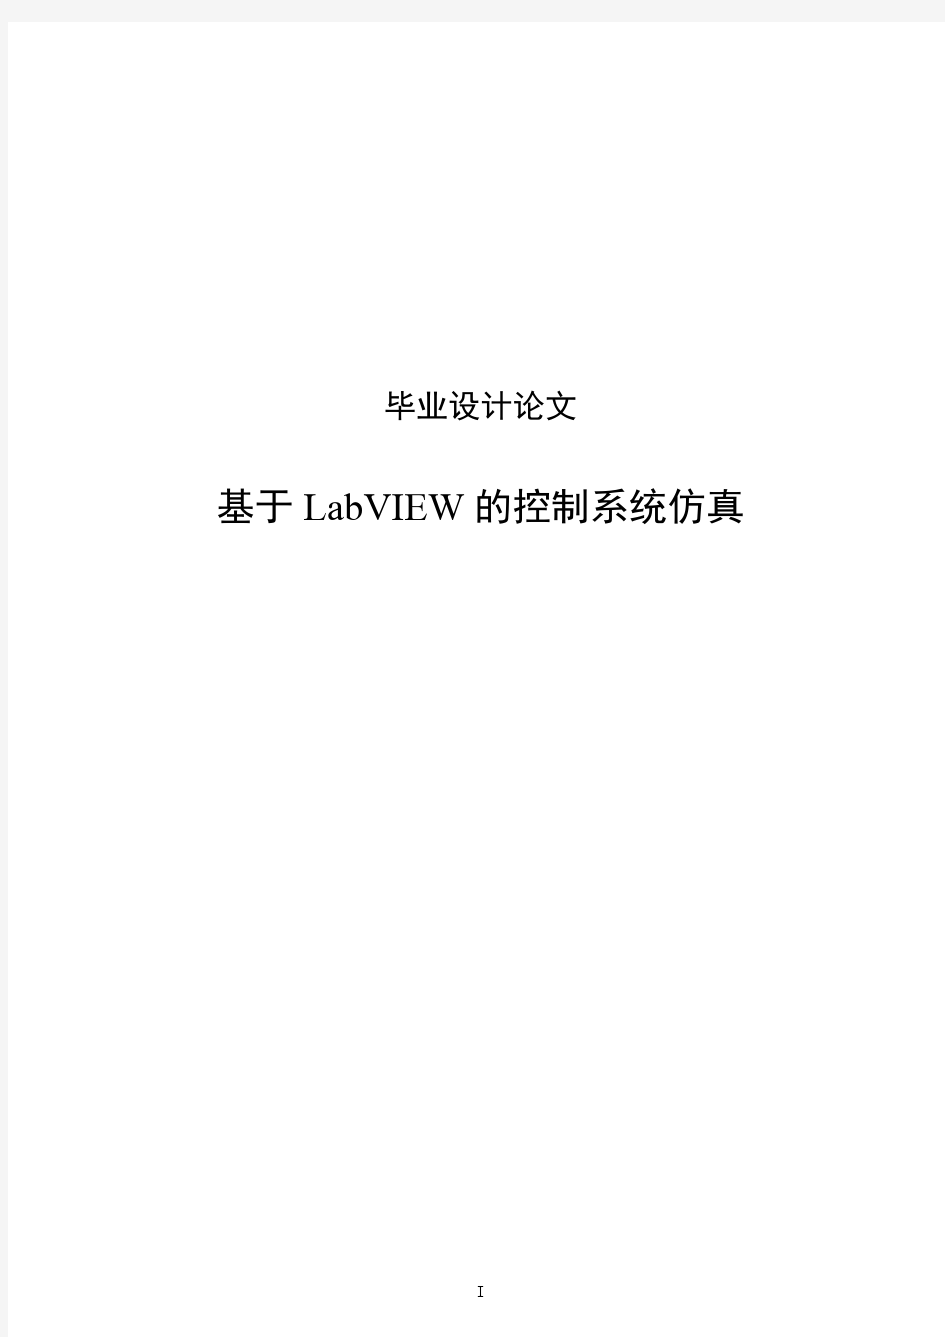 基于LabVIEW的控制系统仿真毕业设计(论文)